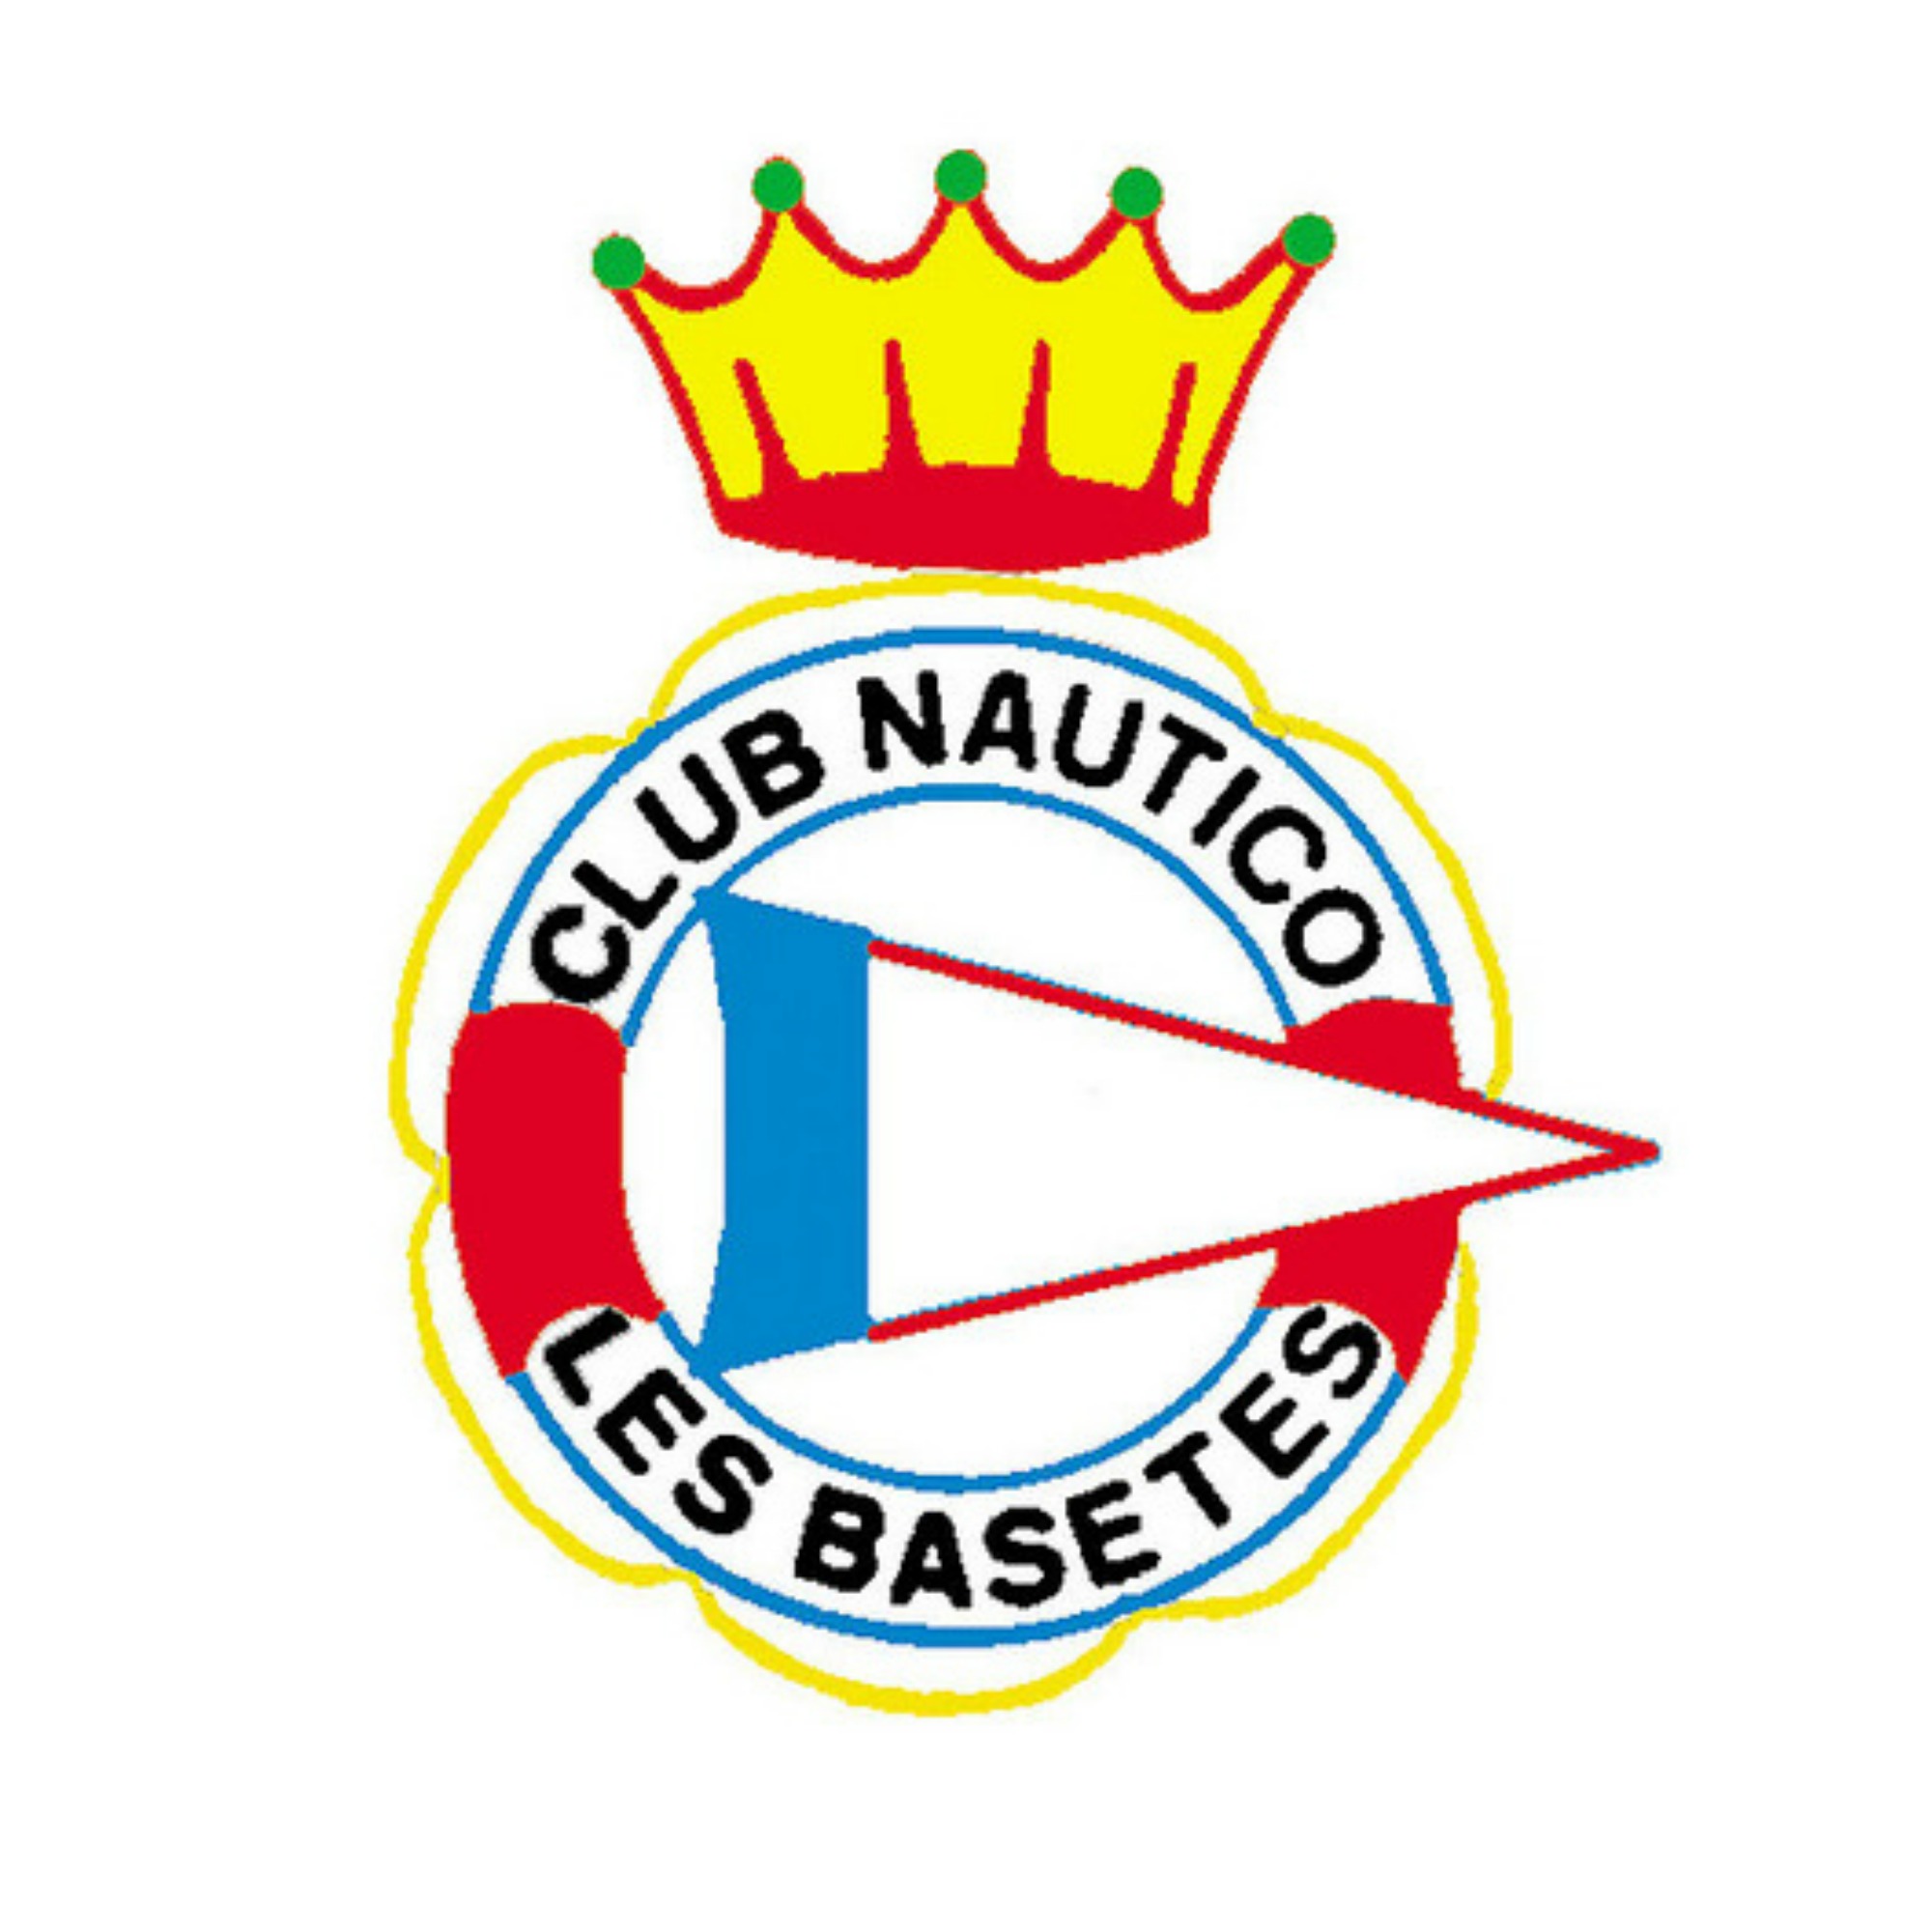 Club Náutico (Yacht club) Les Basetes 